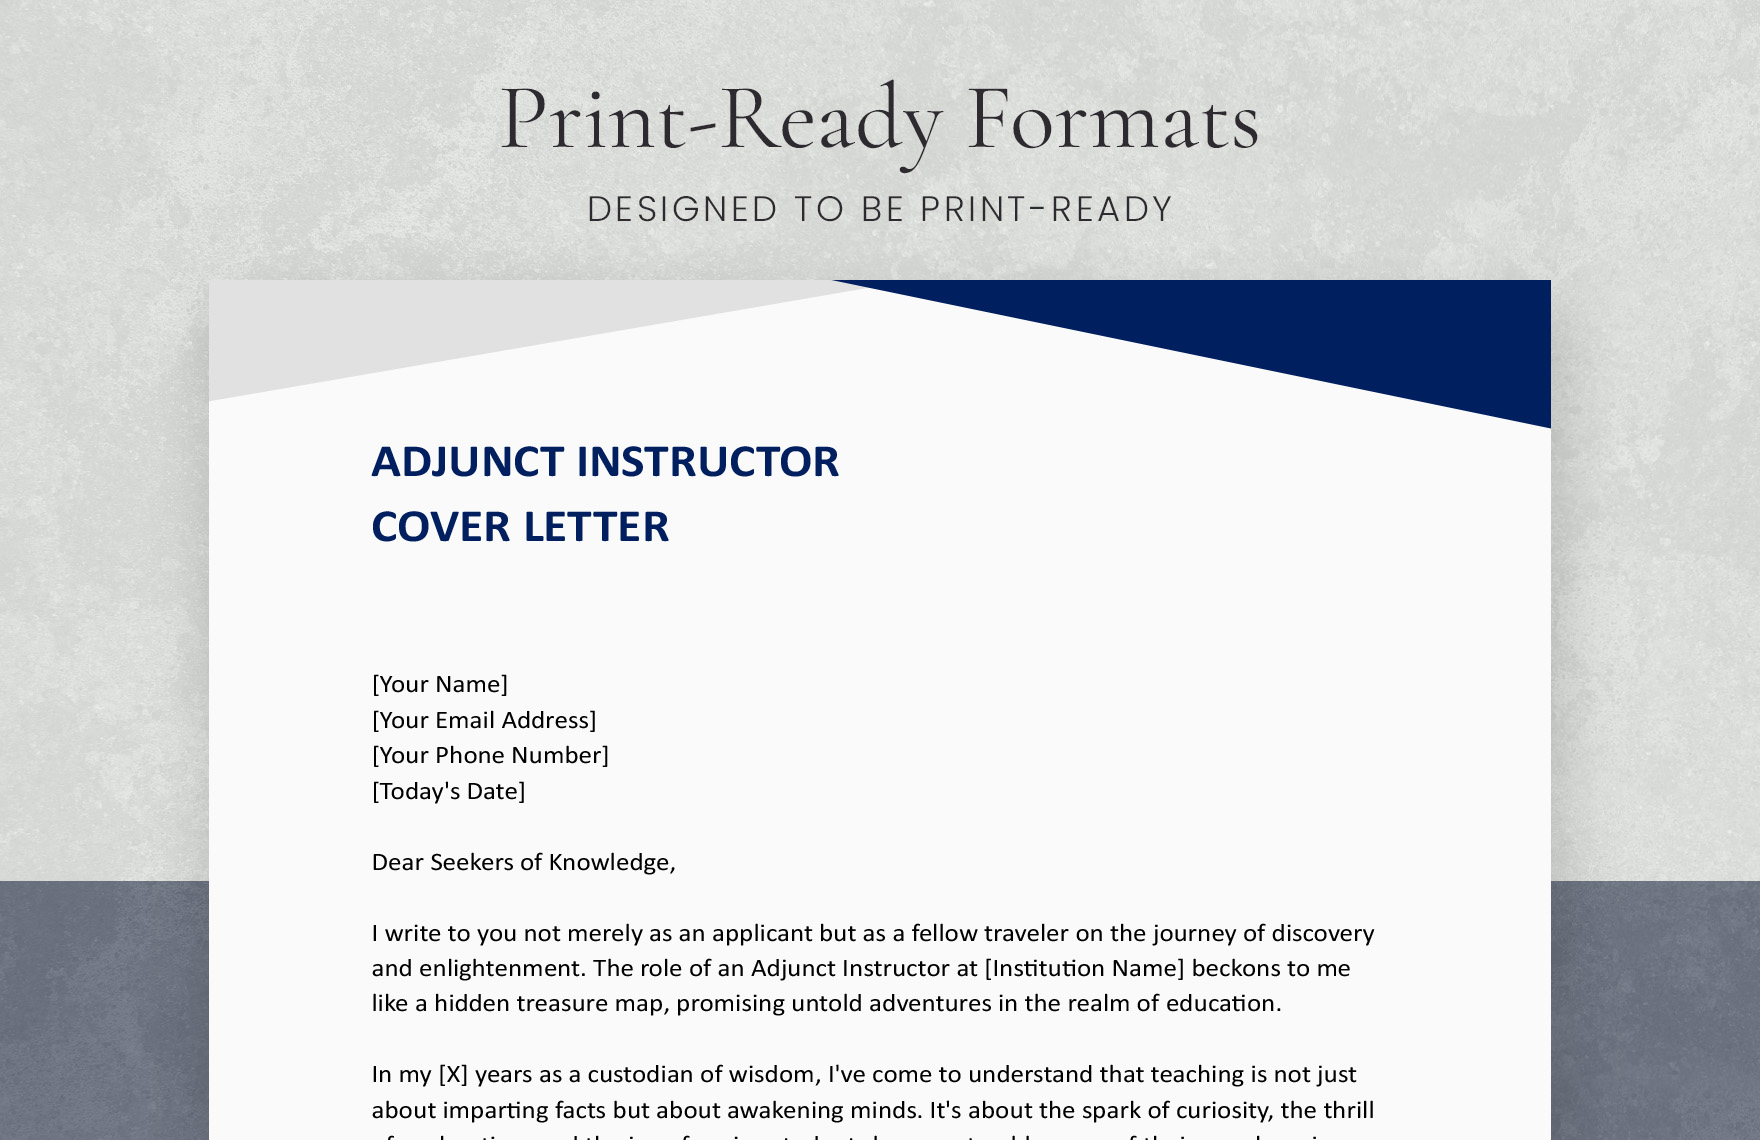 Adjunct Instructor Cover Letter